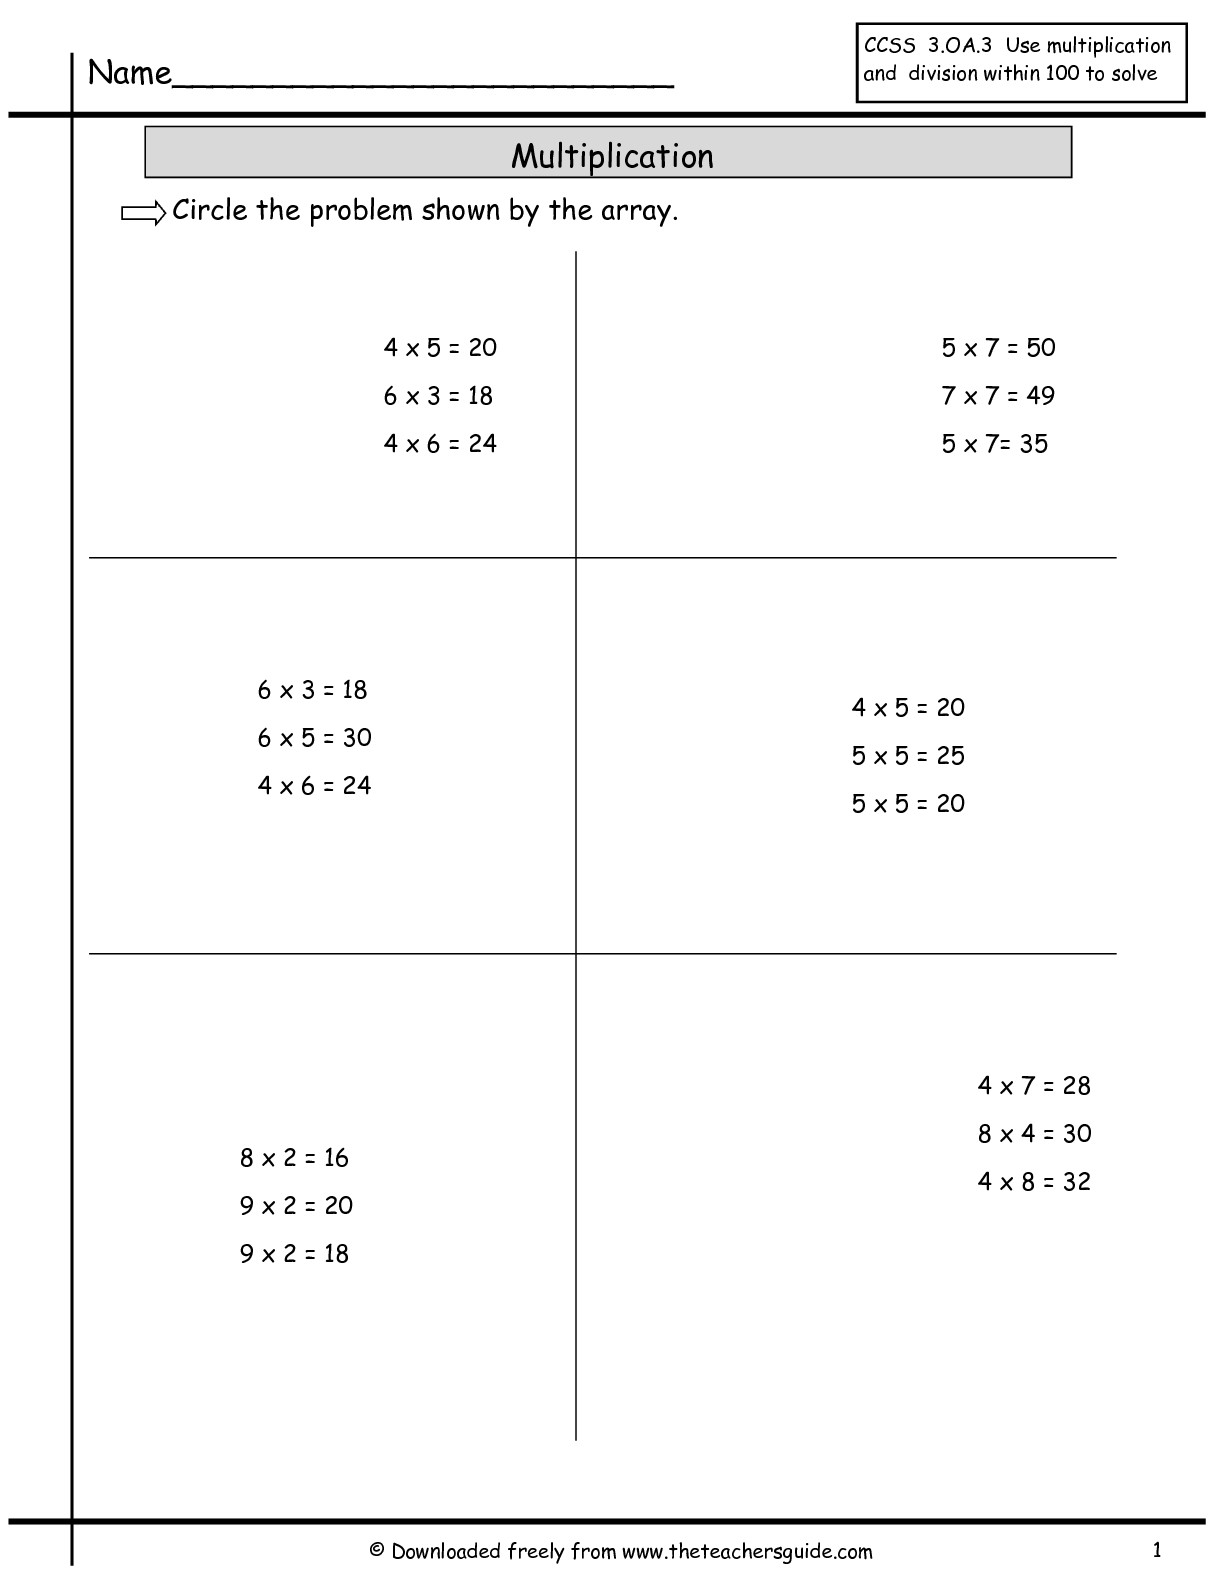 16-best-images-of-multiplication-array-worksheets-on-graph-array-multiplication-worksheet